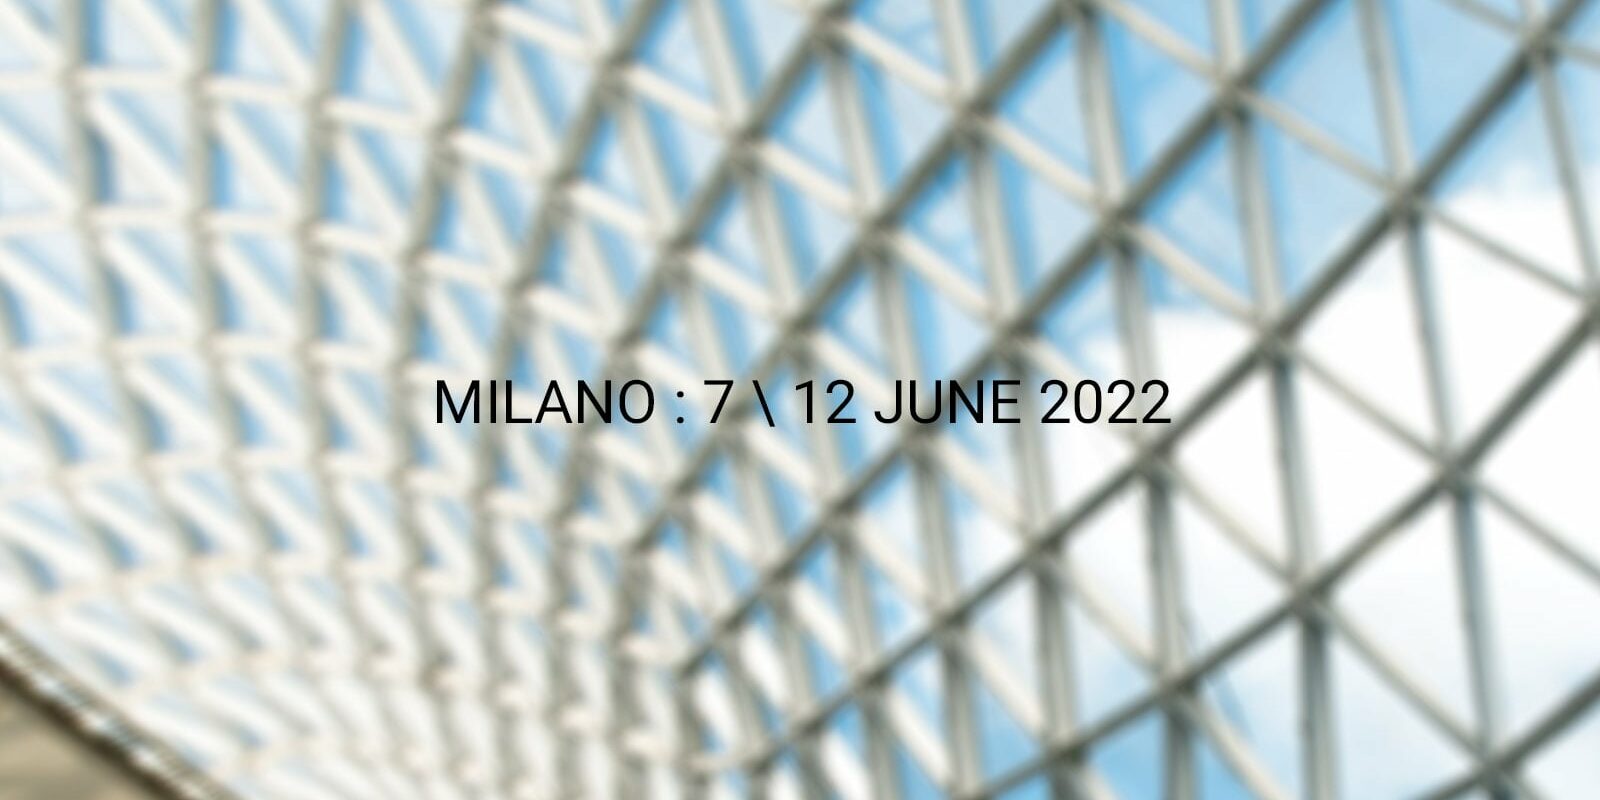 Salone del Mobile.Milano 2022